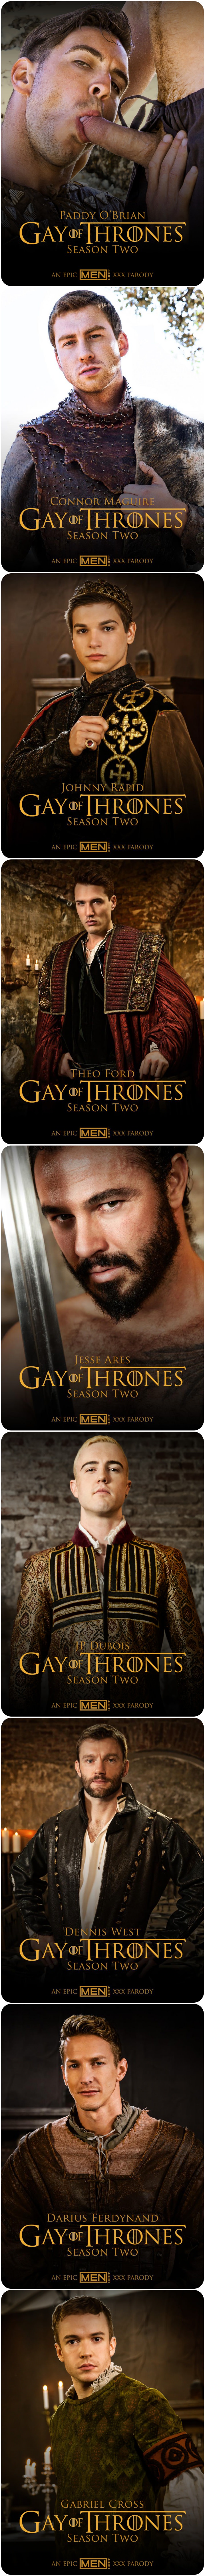 gay-of-thrones-2-cast